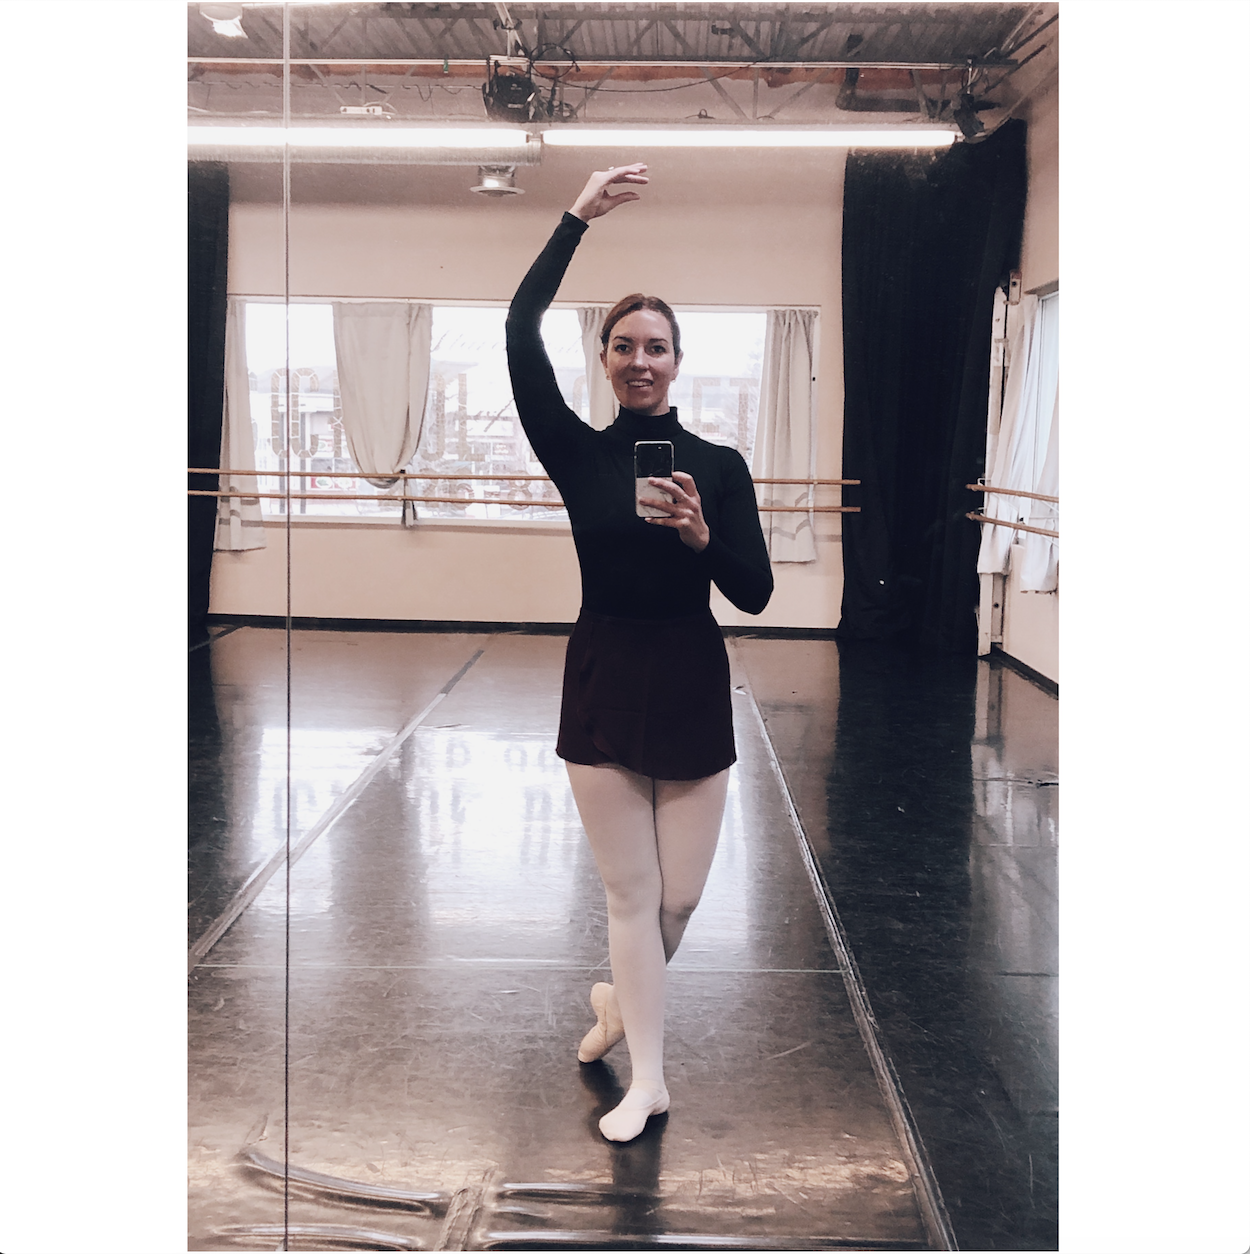 My Ballet Intensive: Days 1-3